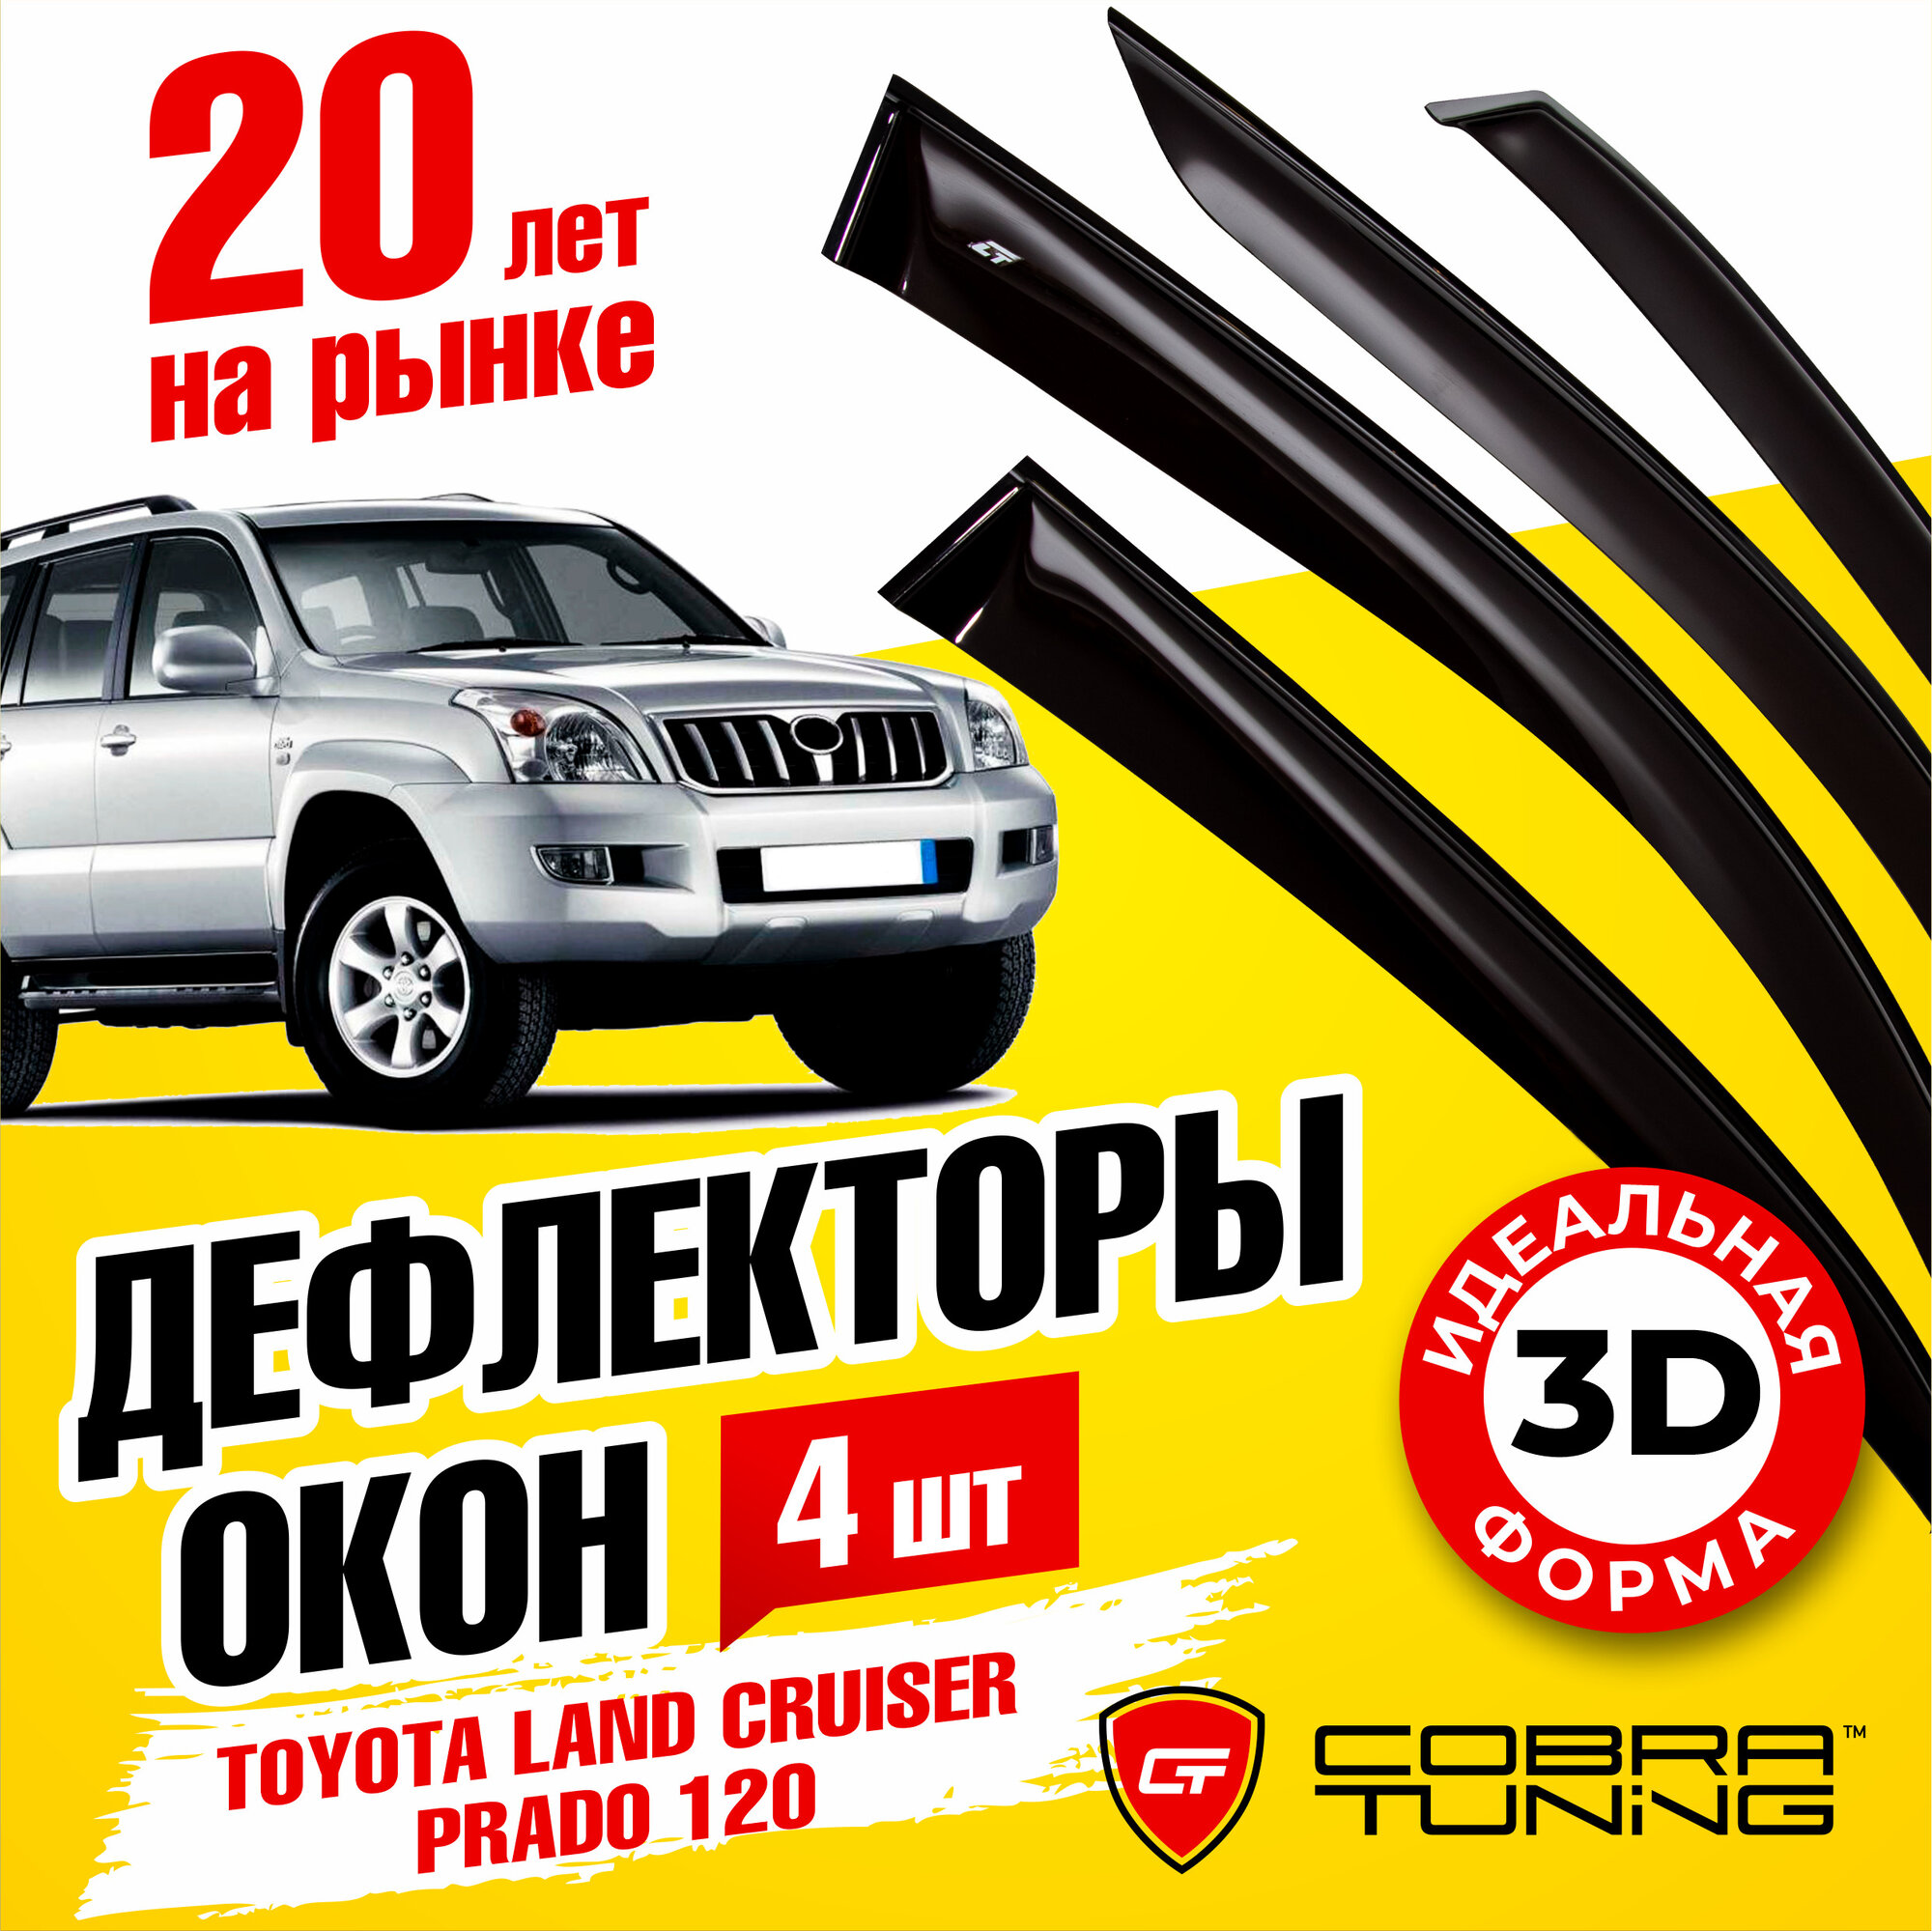 Дефлекторы боковых окон для Toyota Land Cruiser Prado (Тойота Ленд Крузер Прадо) 120 5-ти дверный 2003-2008, ветровики на двери автомобиля, Cobra Tuning